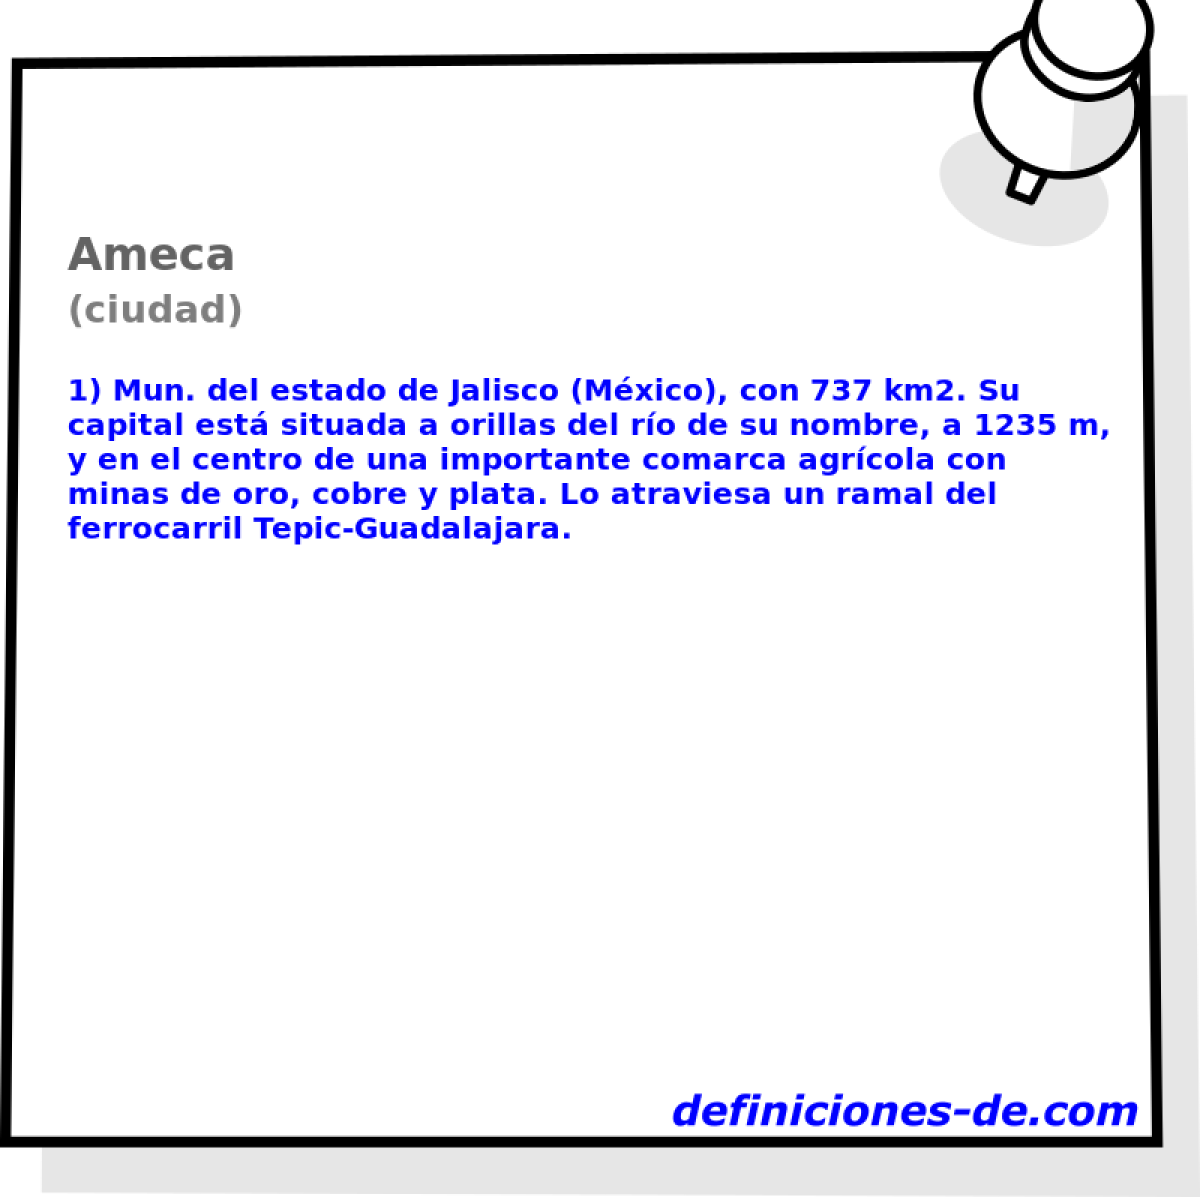 Ameca (ciudad)